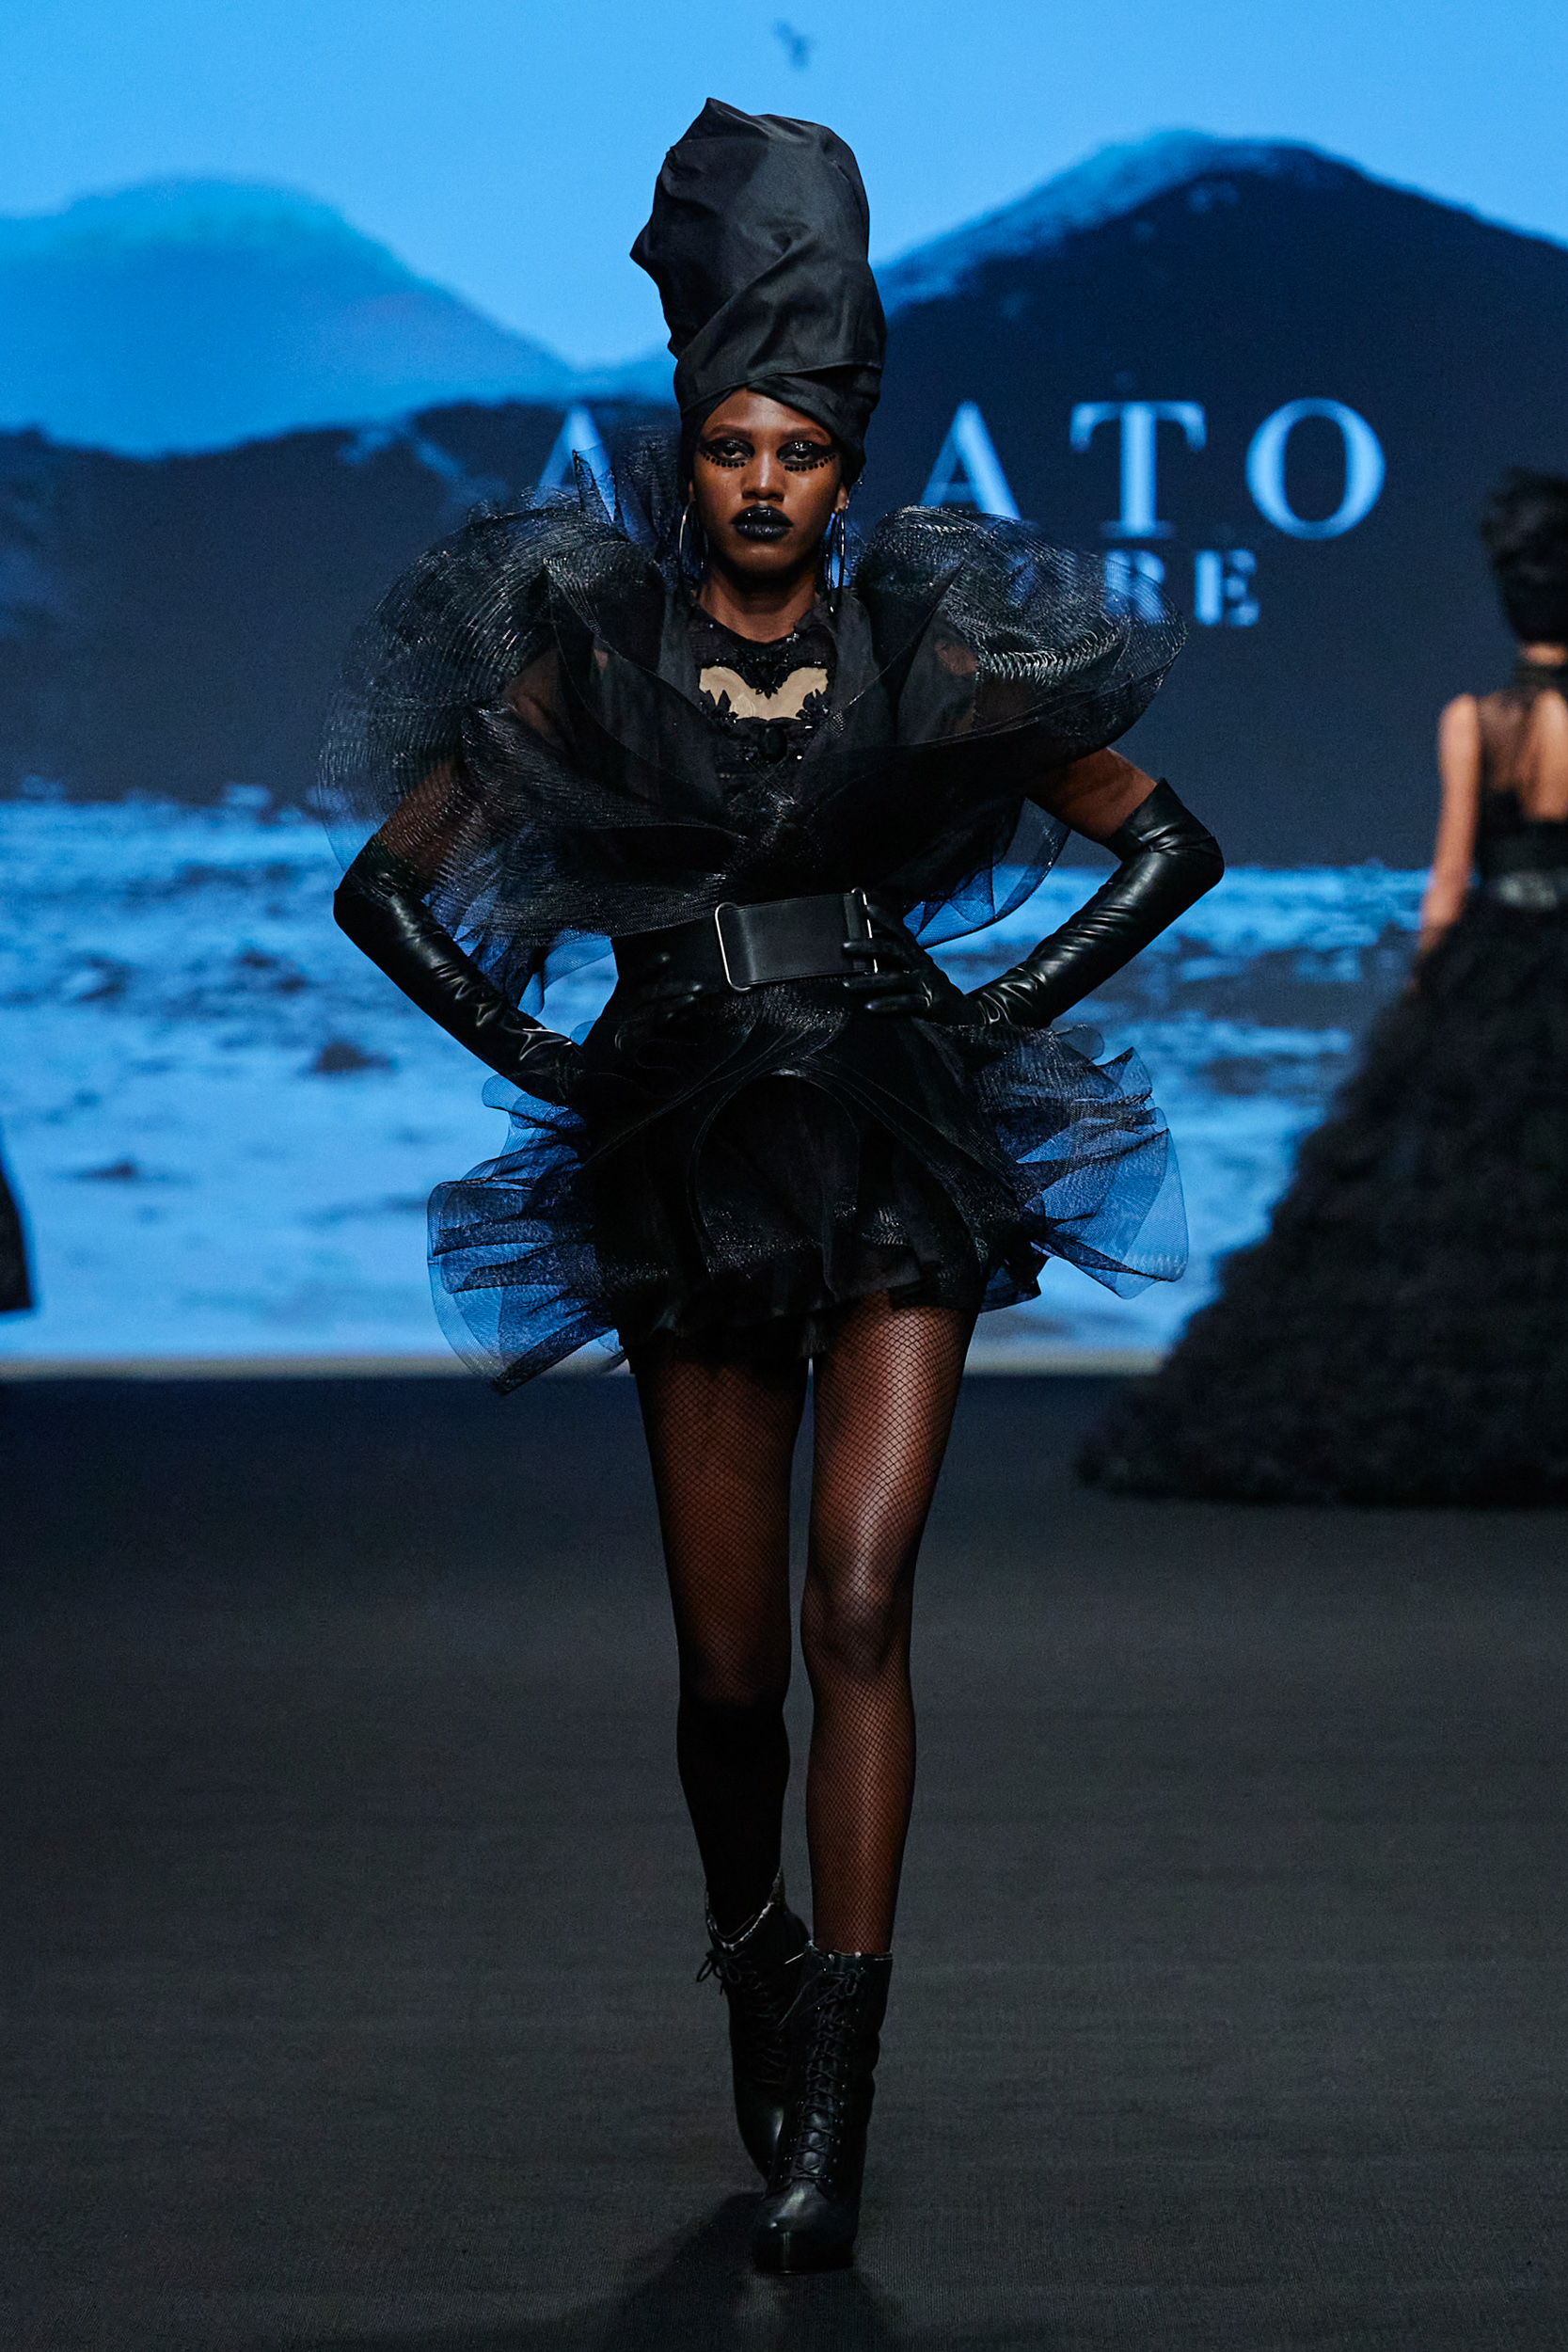 Amato Fall 2022 Couture Fashion Show 